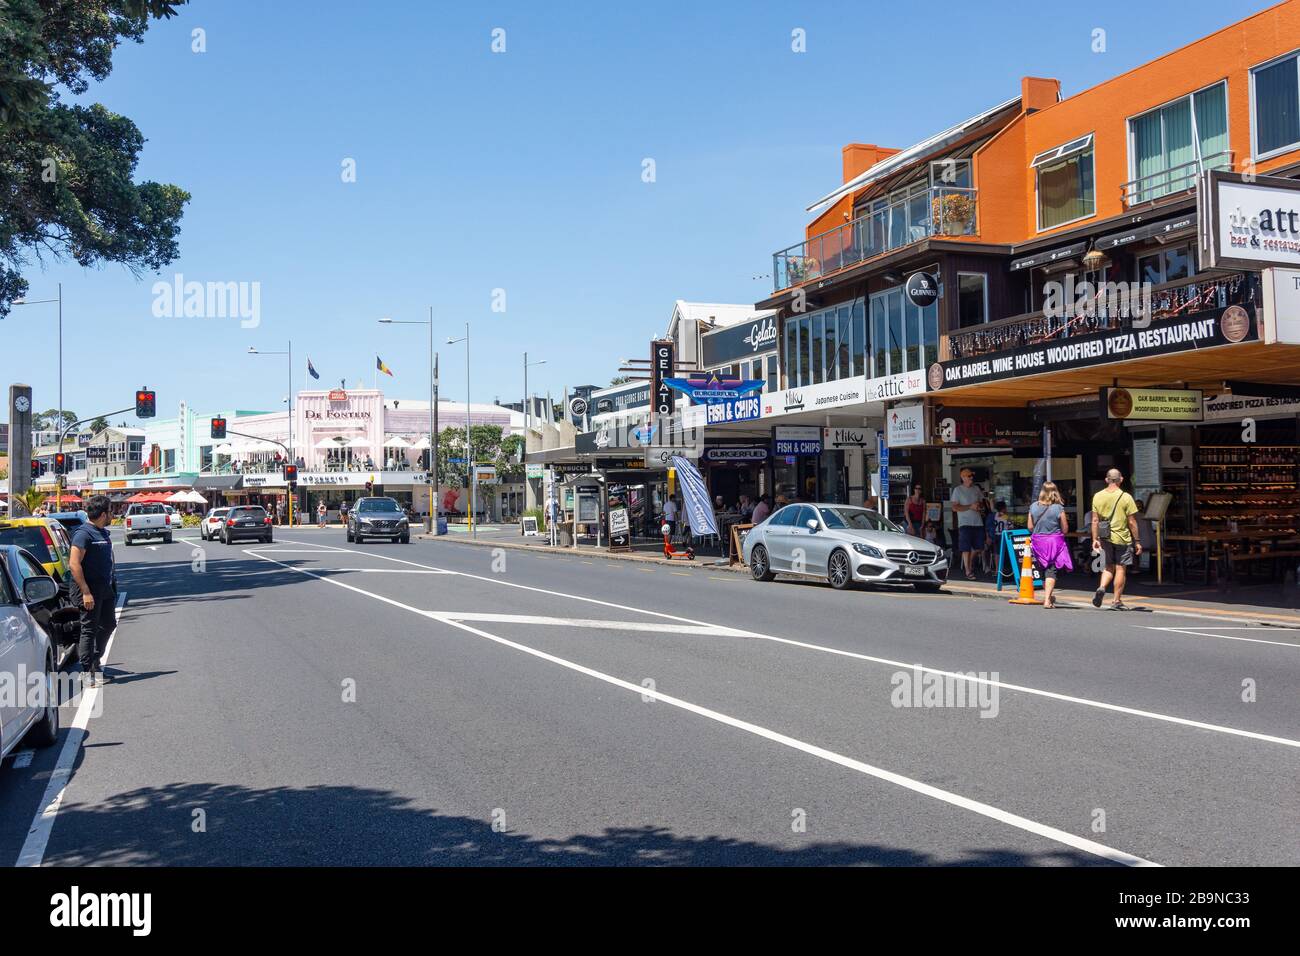 Tiendas y restaurantes, Tamaki Drive, Mission Bay, Auckland, Nueva Zelanda Foto de stock